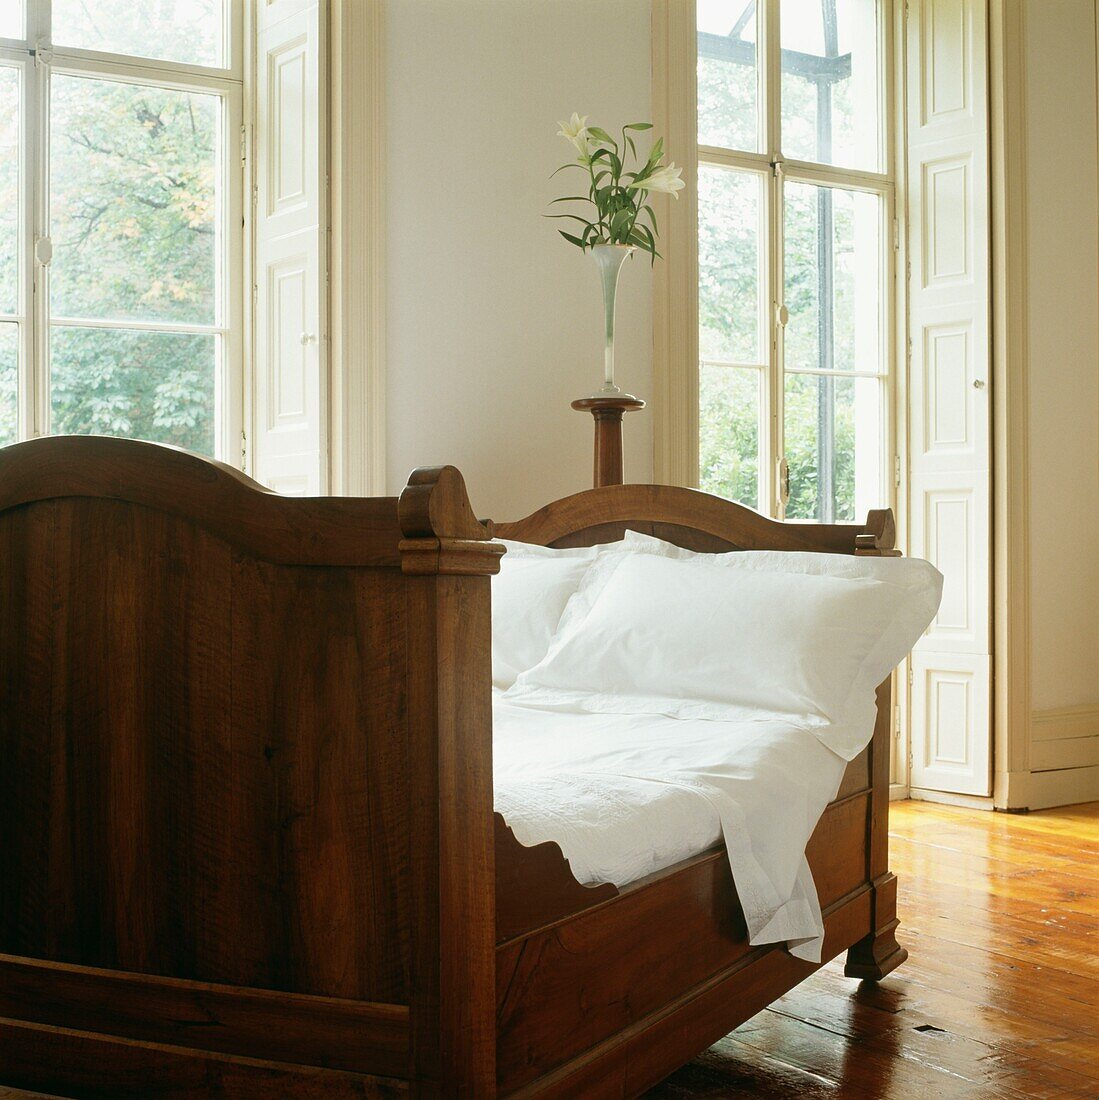 Holzbett im Wohnzimmer mit polierten Holzböden und Fensterläden an französischen Fenstern